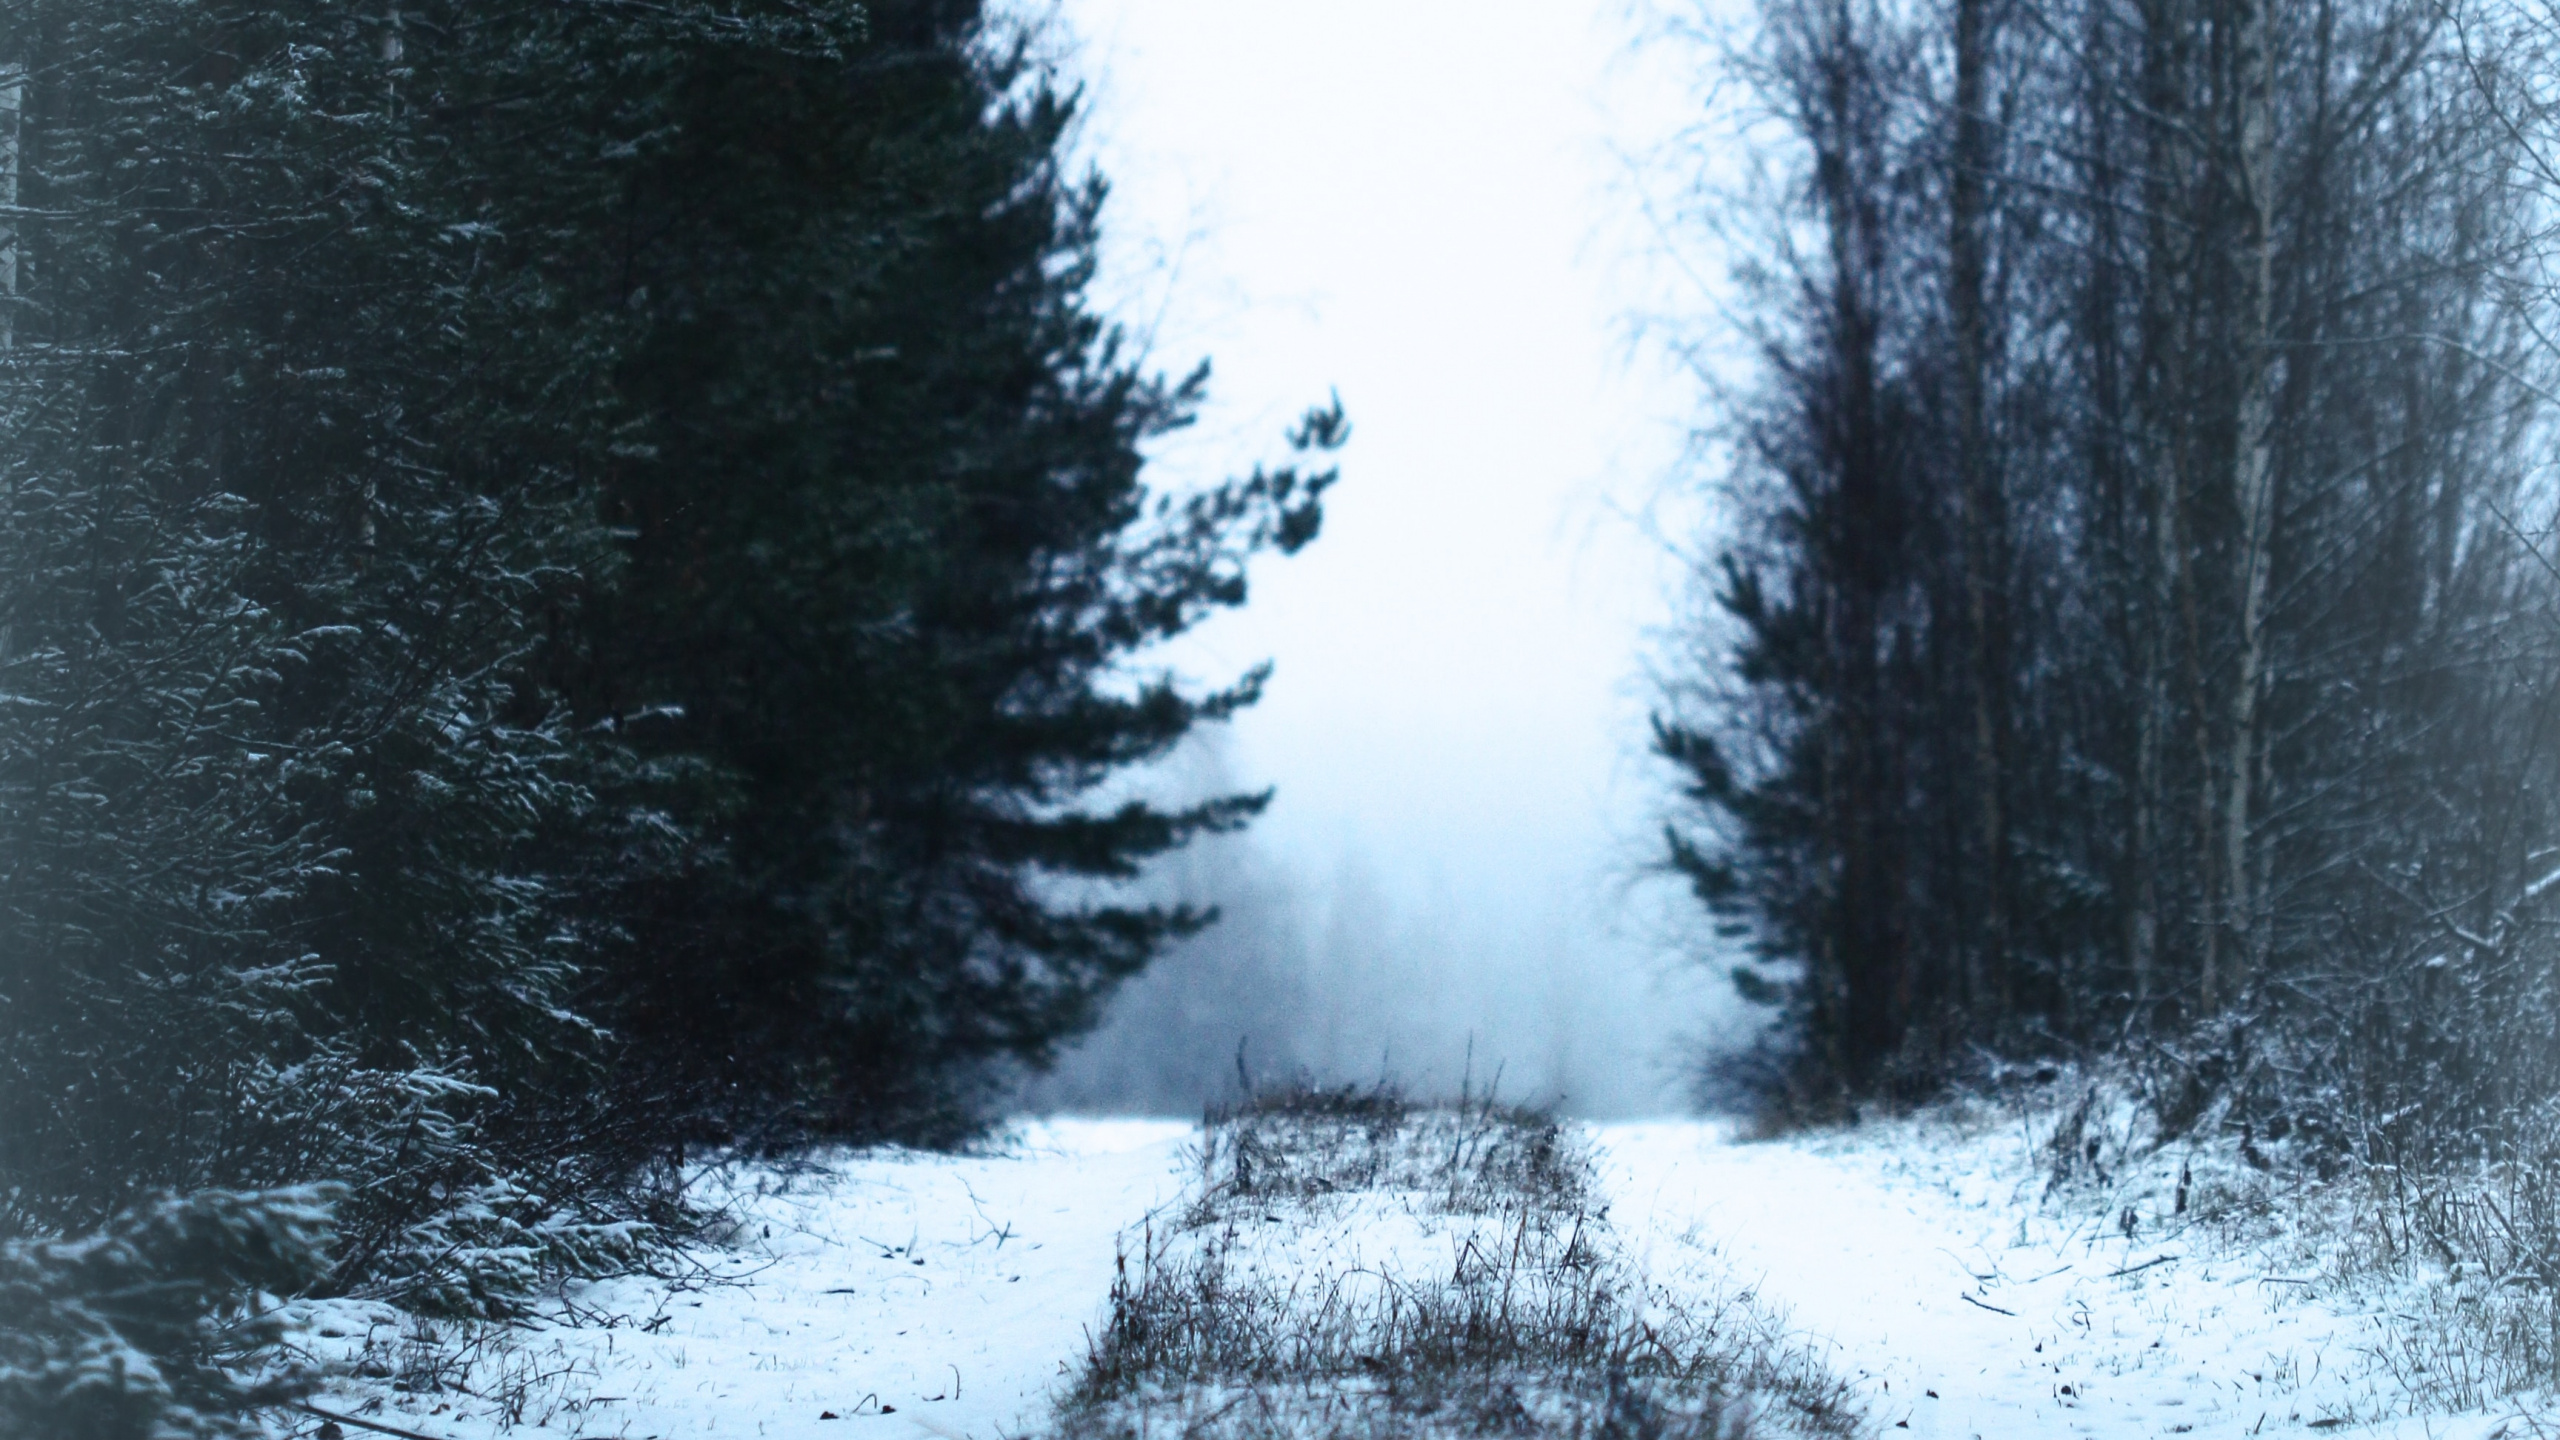 Schnee, Winter, Baum, Natur, Einfrieren. Wallpaper in 2560x1440 Resolution